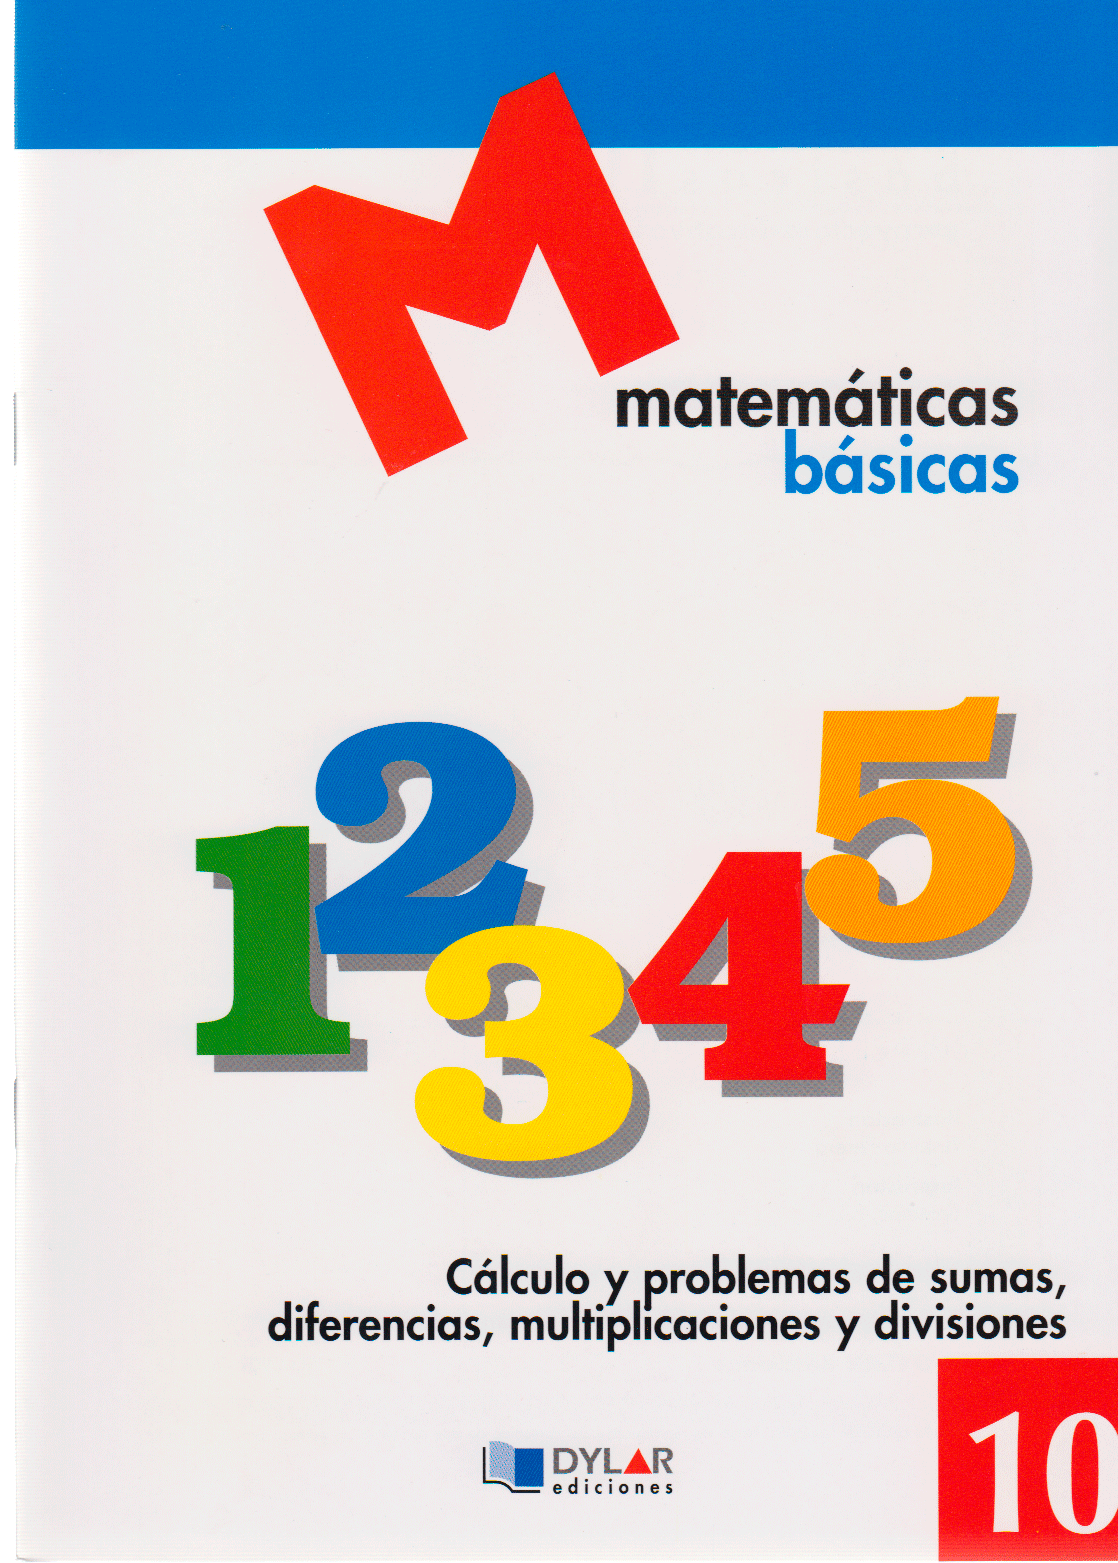 MATEMATICAS BASICAS - 10 Cálculo y poblemas de sumas, diferencias, multiplicaciones y divisiones.